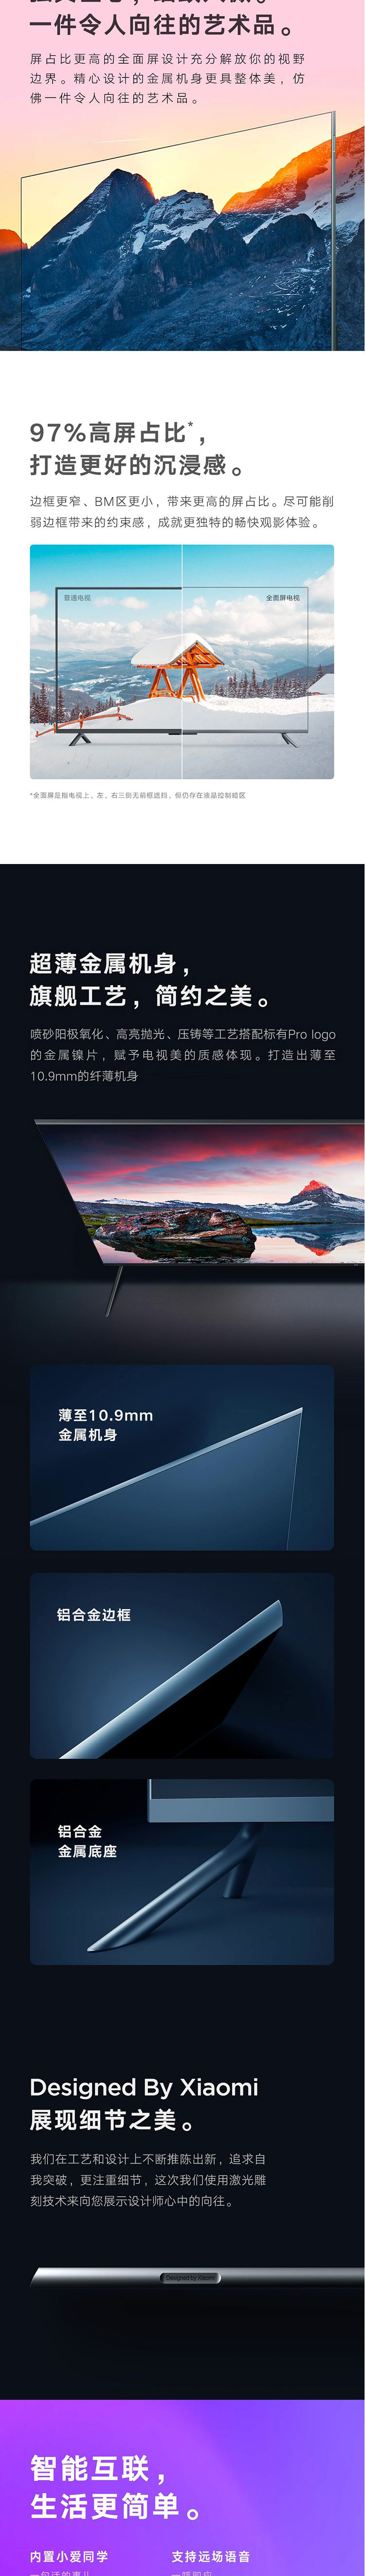 小米电视5 Pro系列 75英寸  全面屏 量子点 4K超高清 4G+64GB内存人工智能